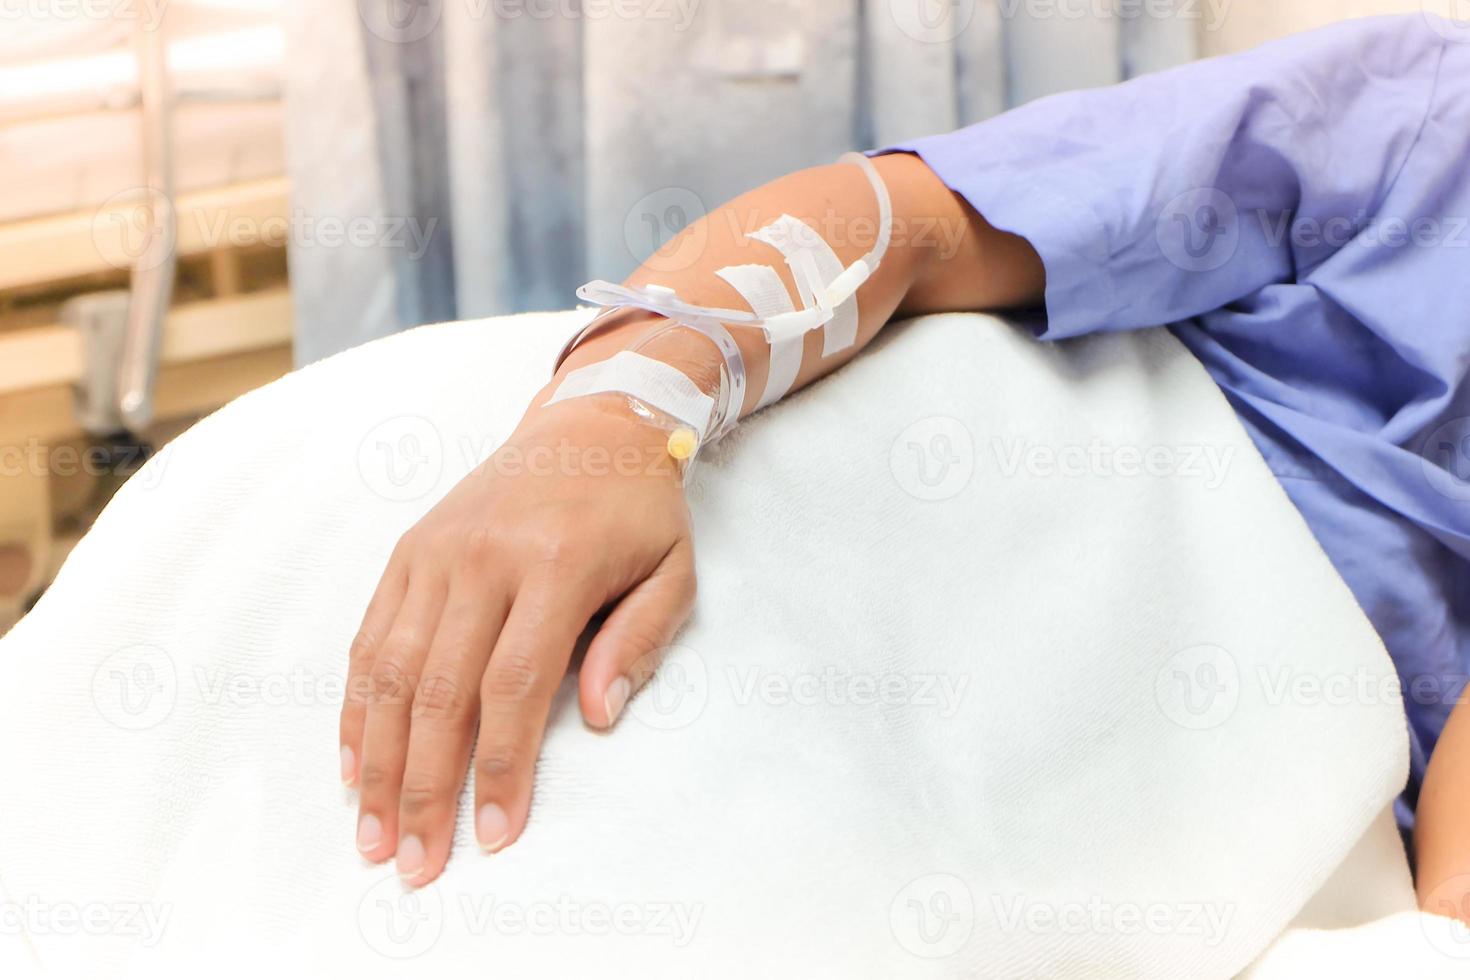 primer plano del goteo de solución salina en la mano del paciente. mujer asiática con ingreso hospitalario. foto